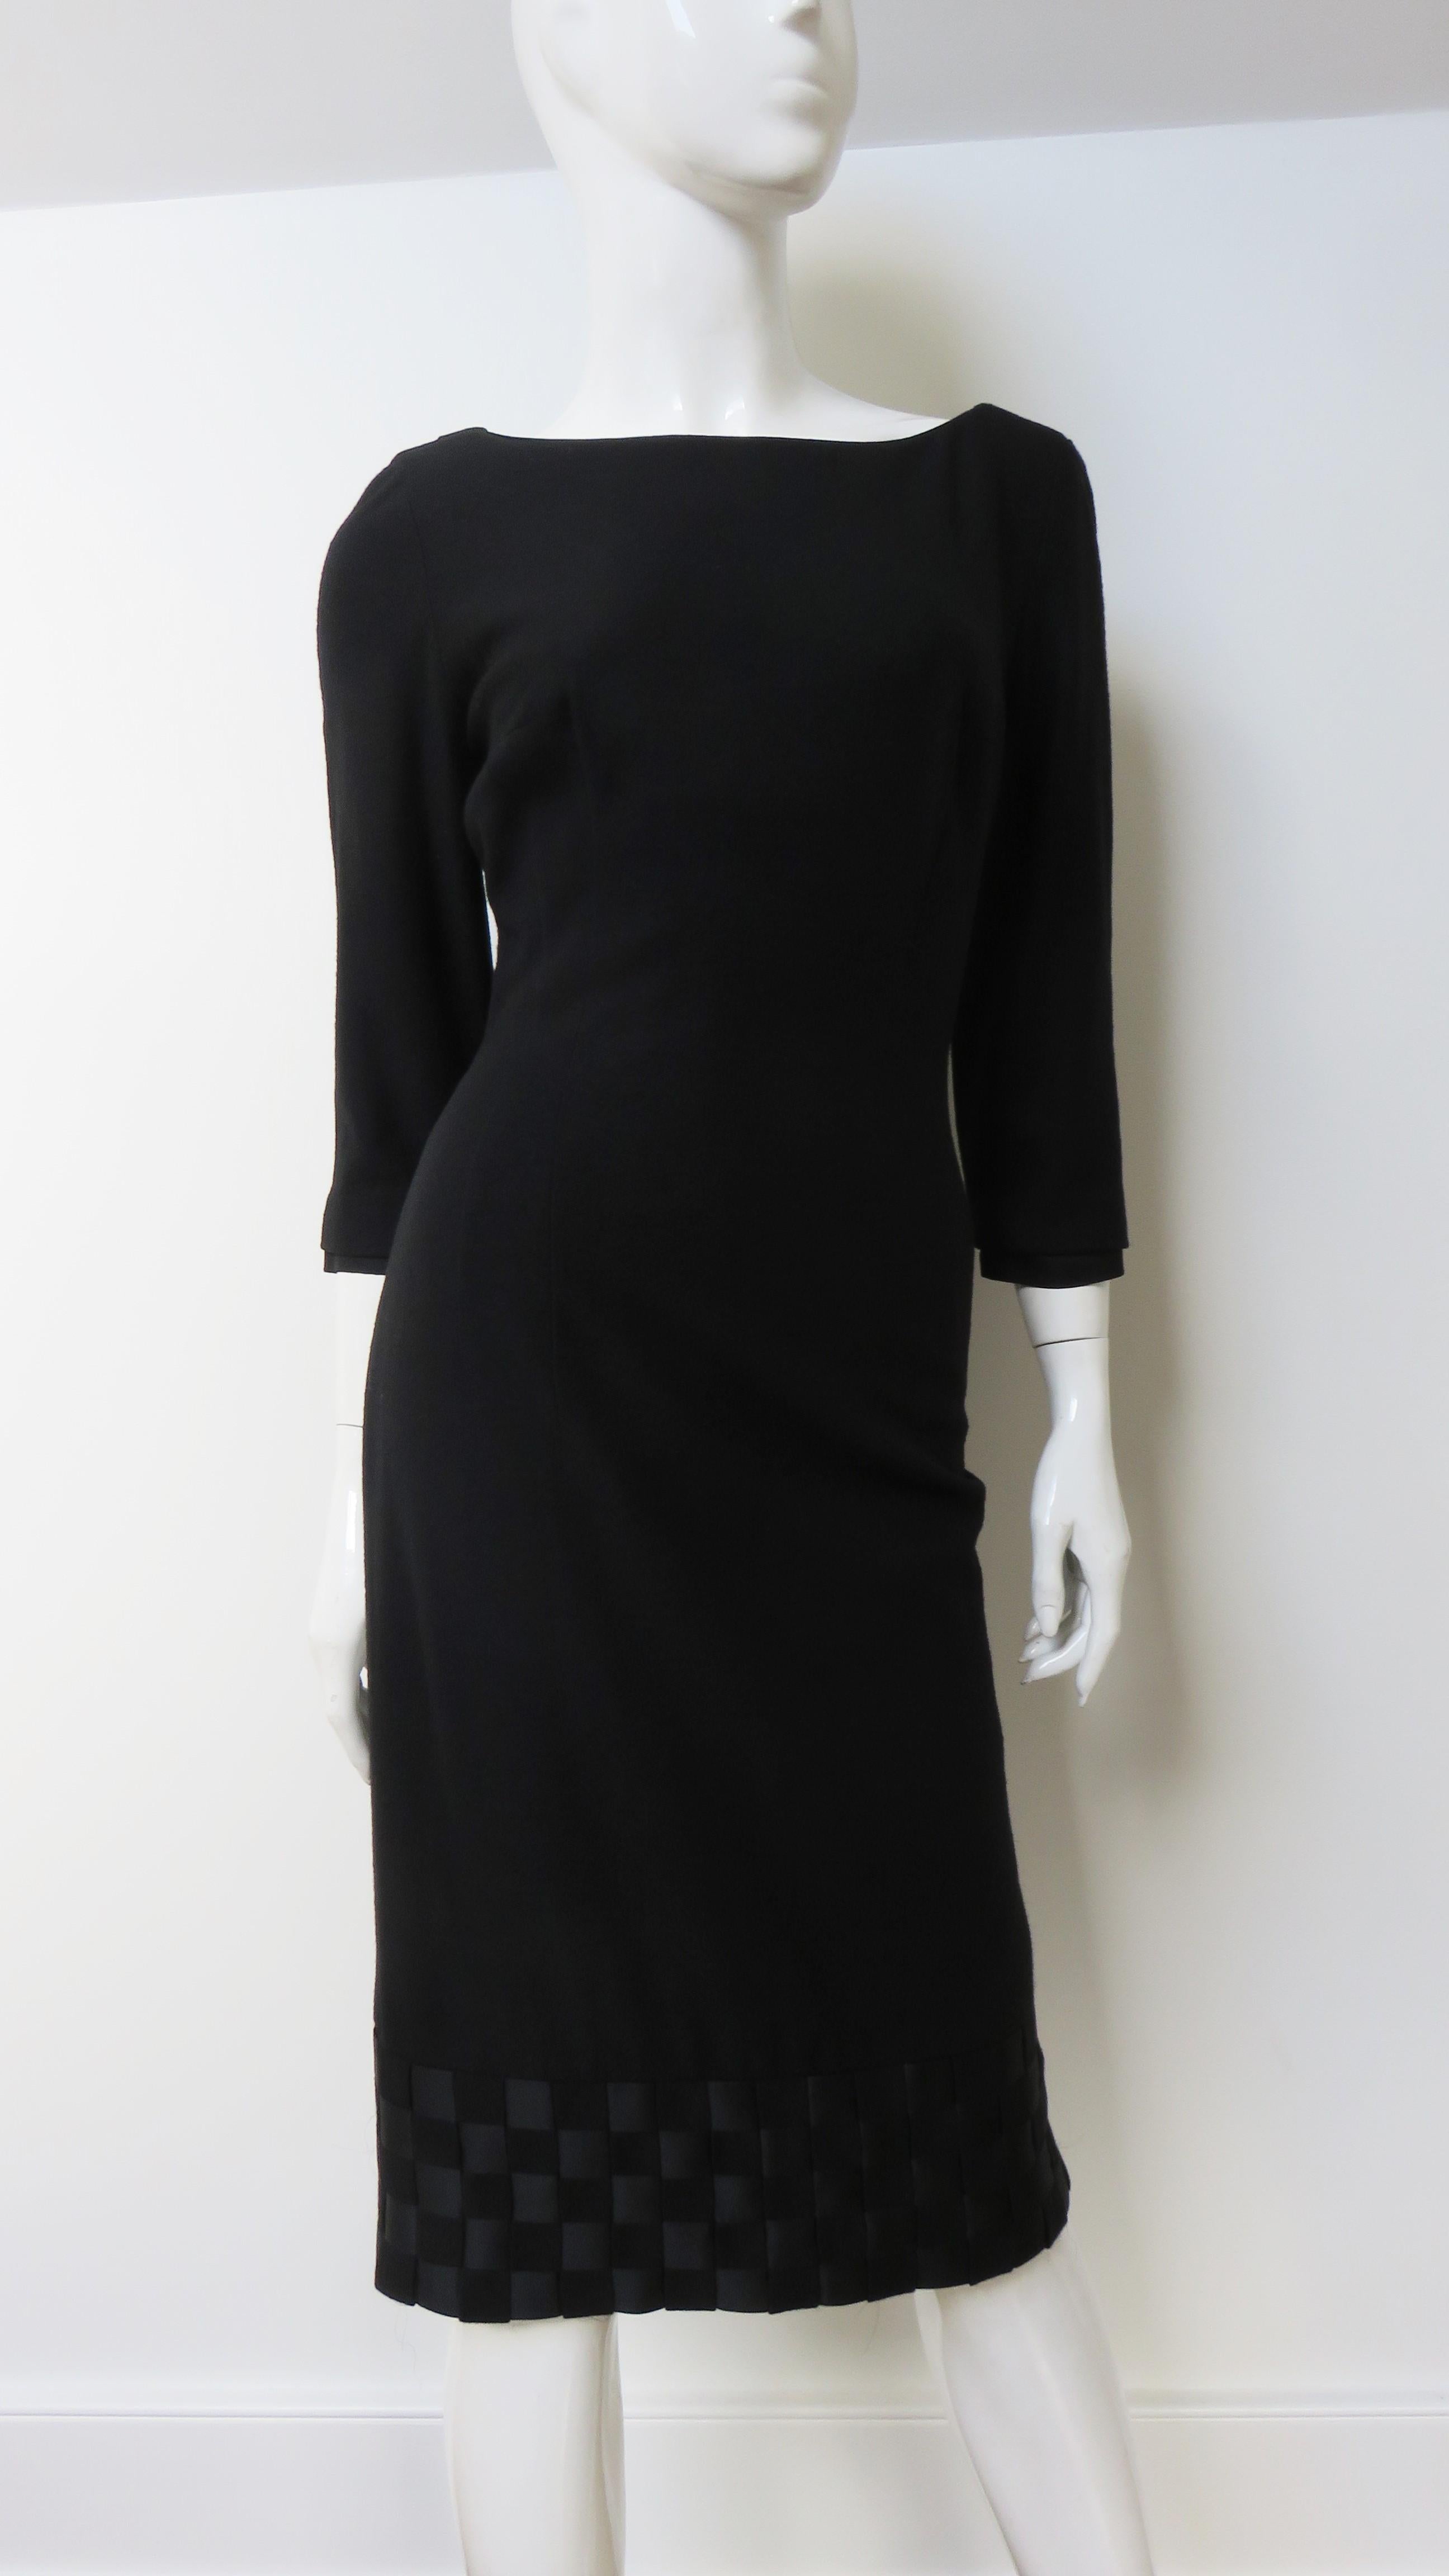 Ein fabelhaftes schwarzes Jersey-Kleid von Mr. Blackwell.  Es ist ein halb taillierter Mantel mit 3/4-Ärmeln und einem Kragen, der im Rücken nach unten abfällt.  Der Kragen und 5